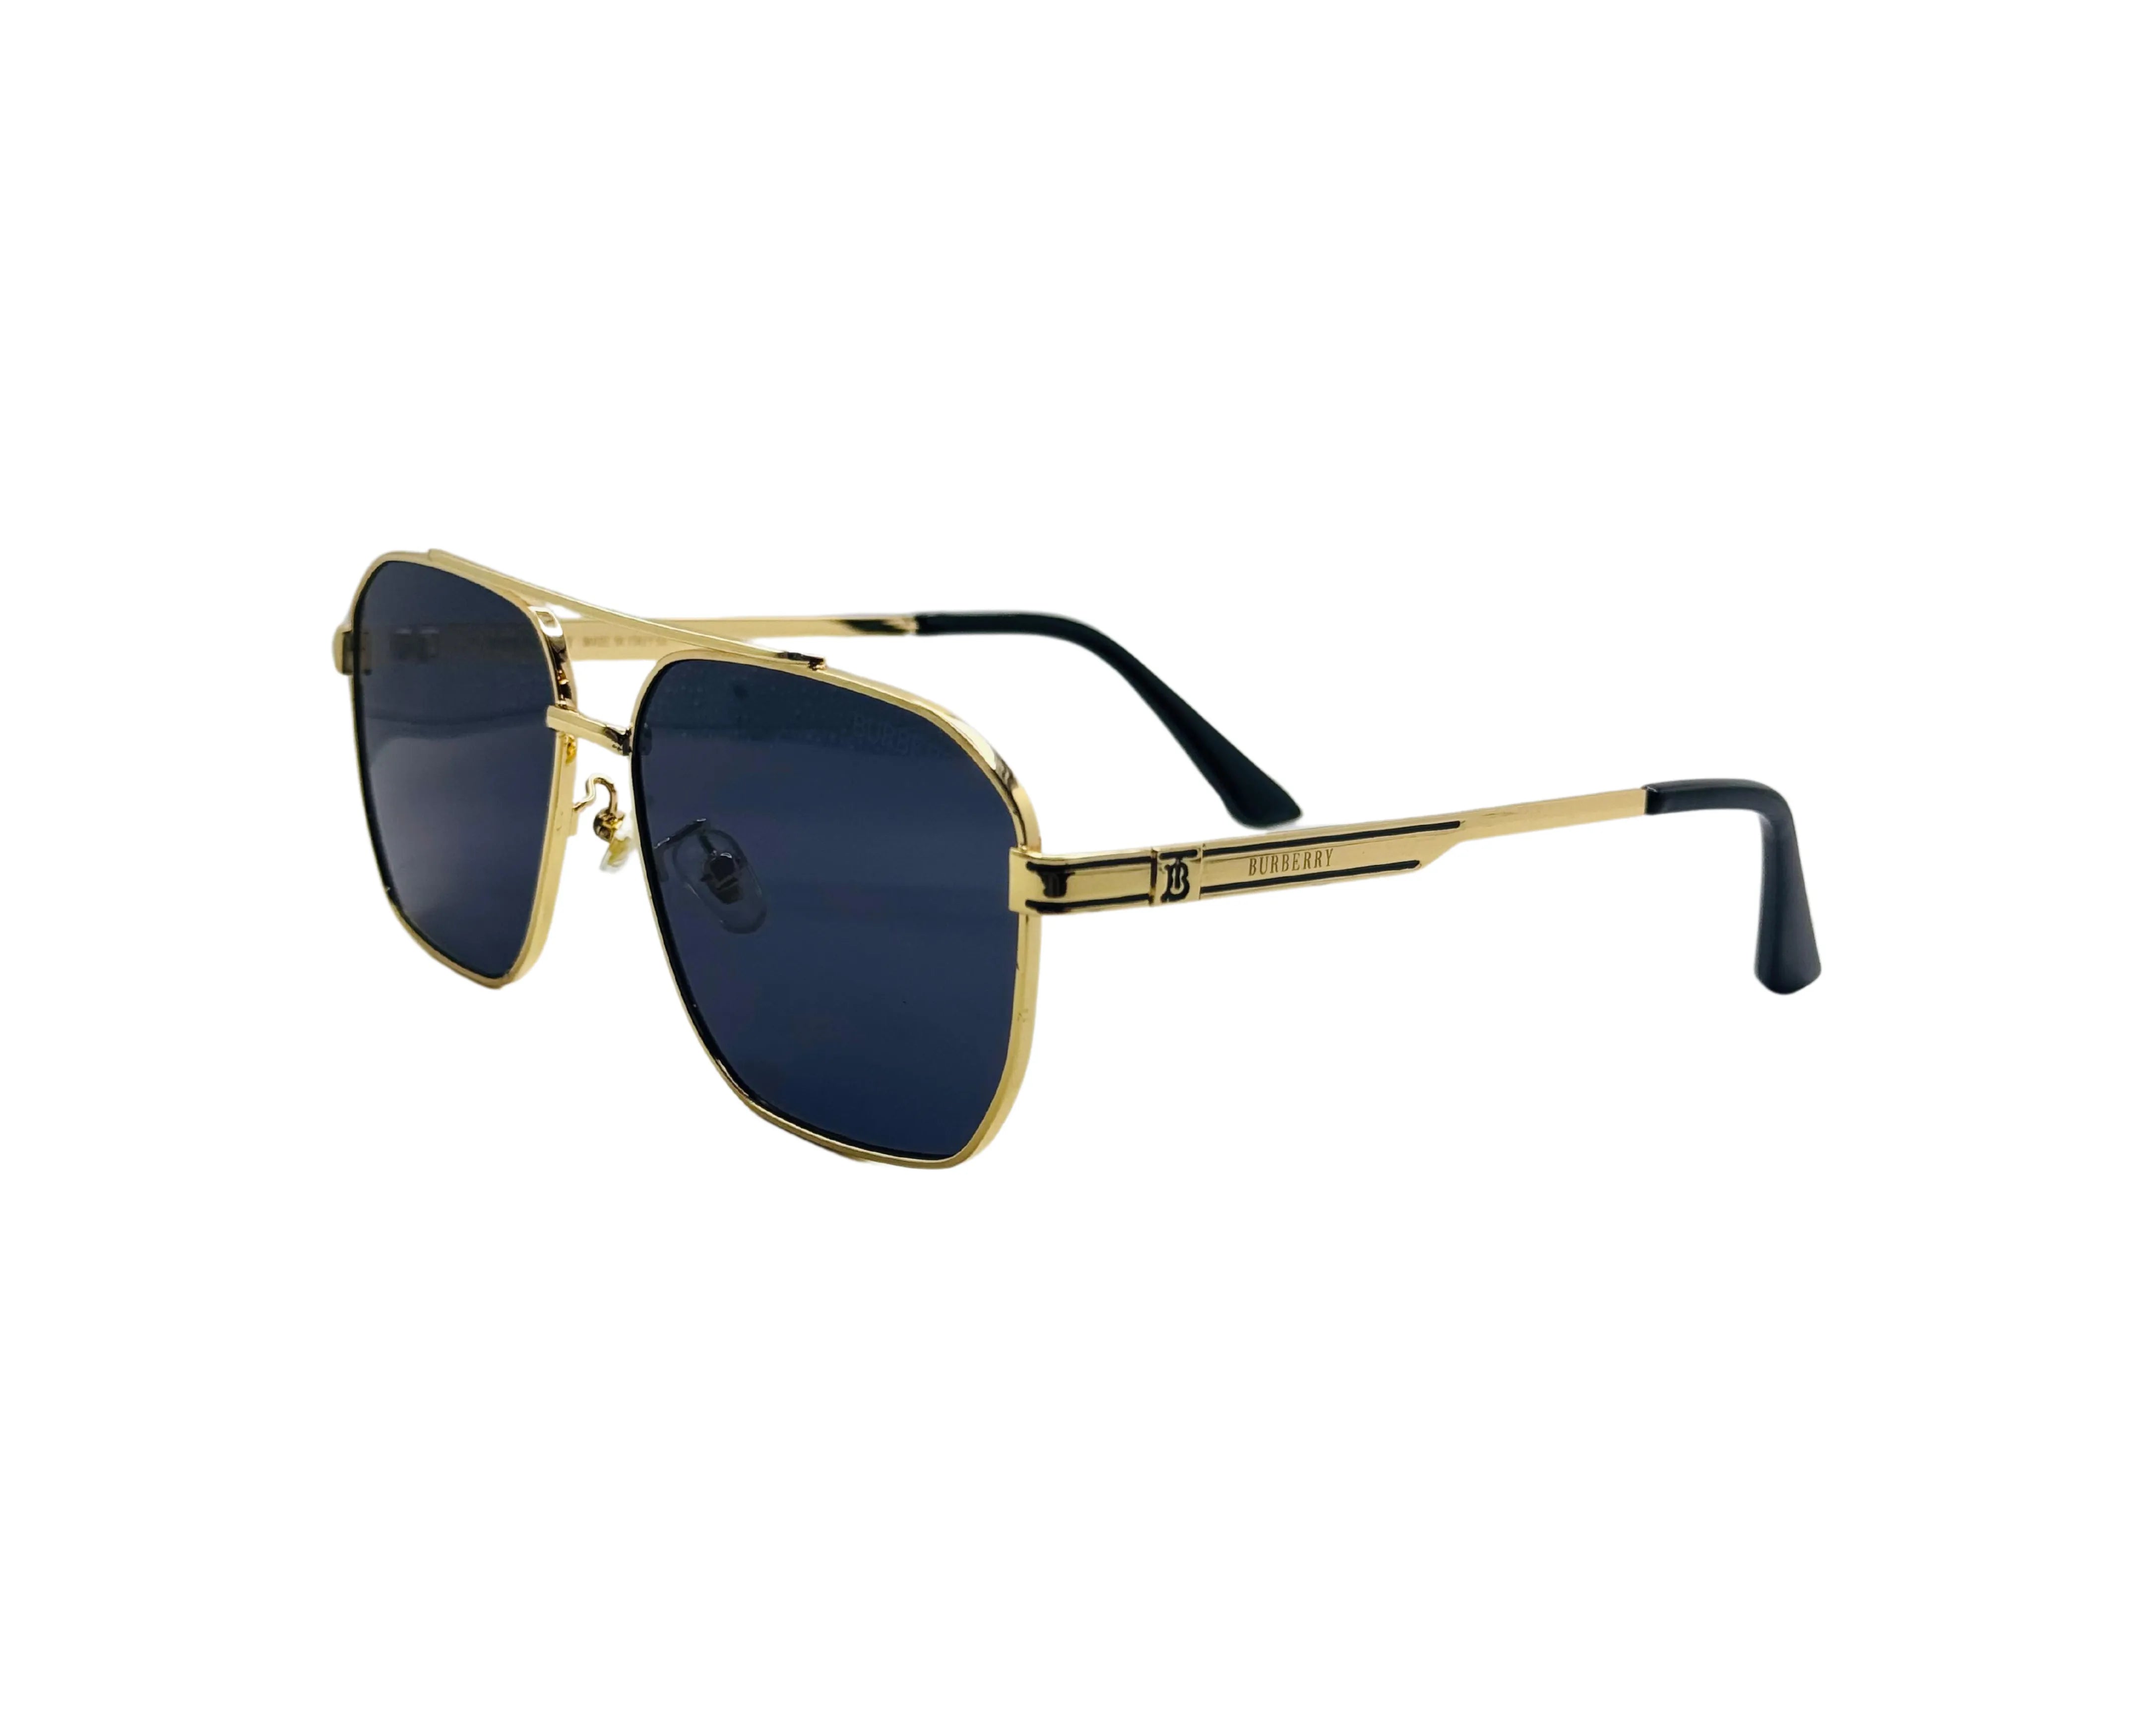 NS Deluxe - 22190 - Golden - Sunglasses